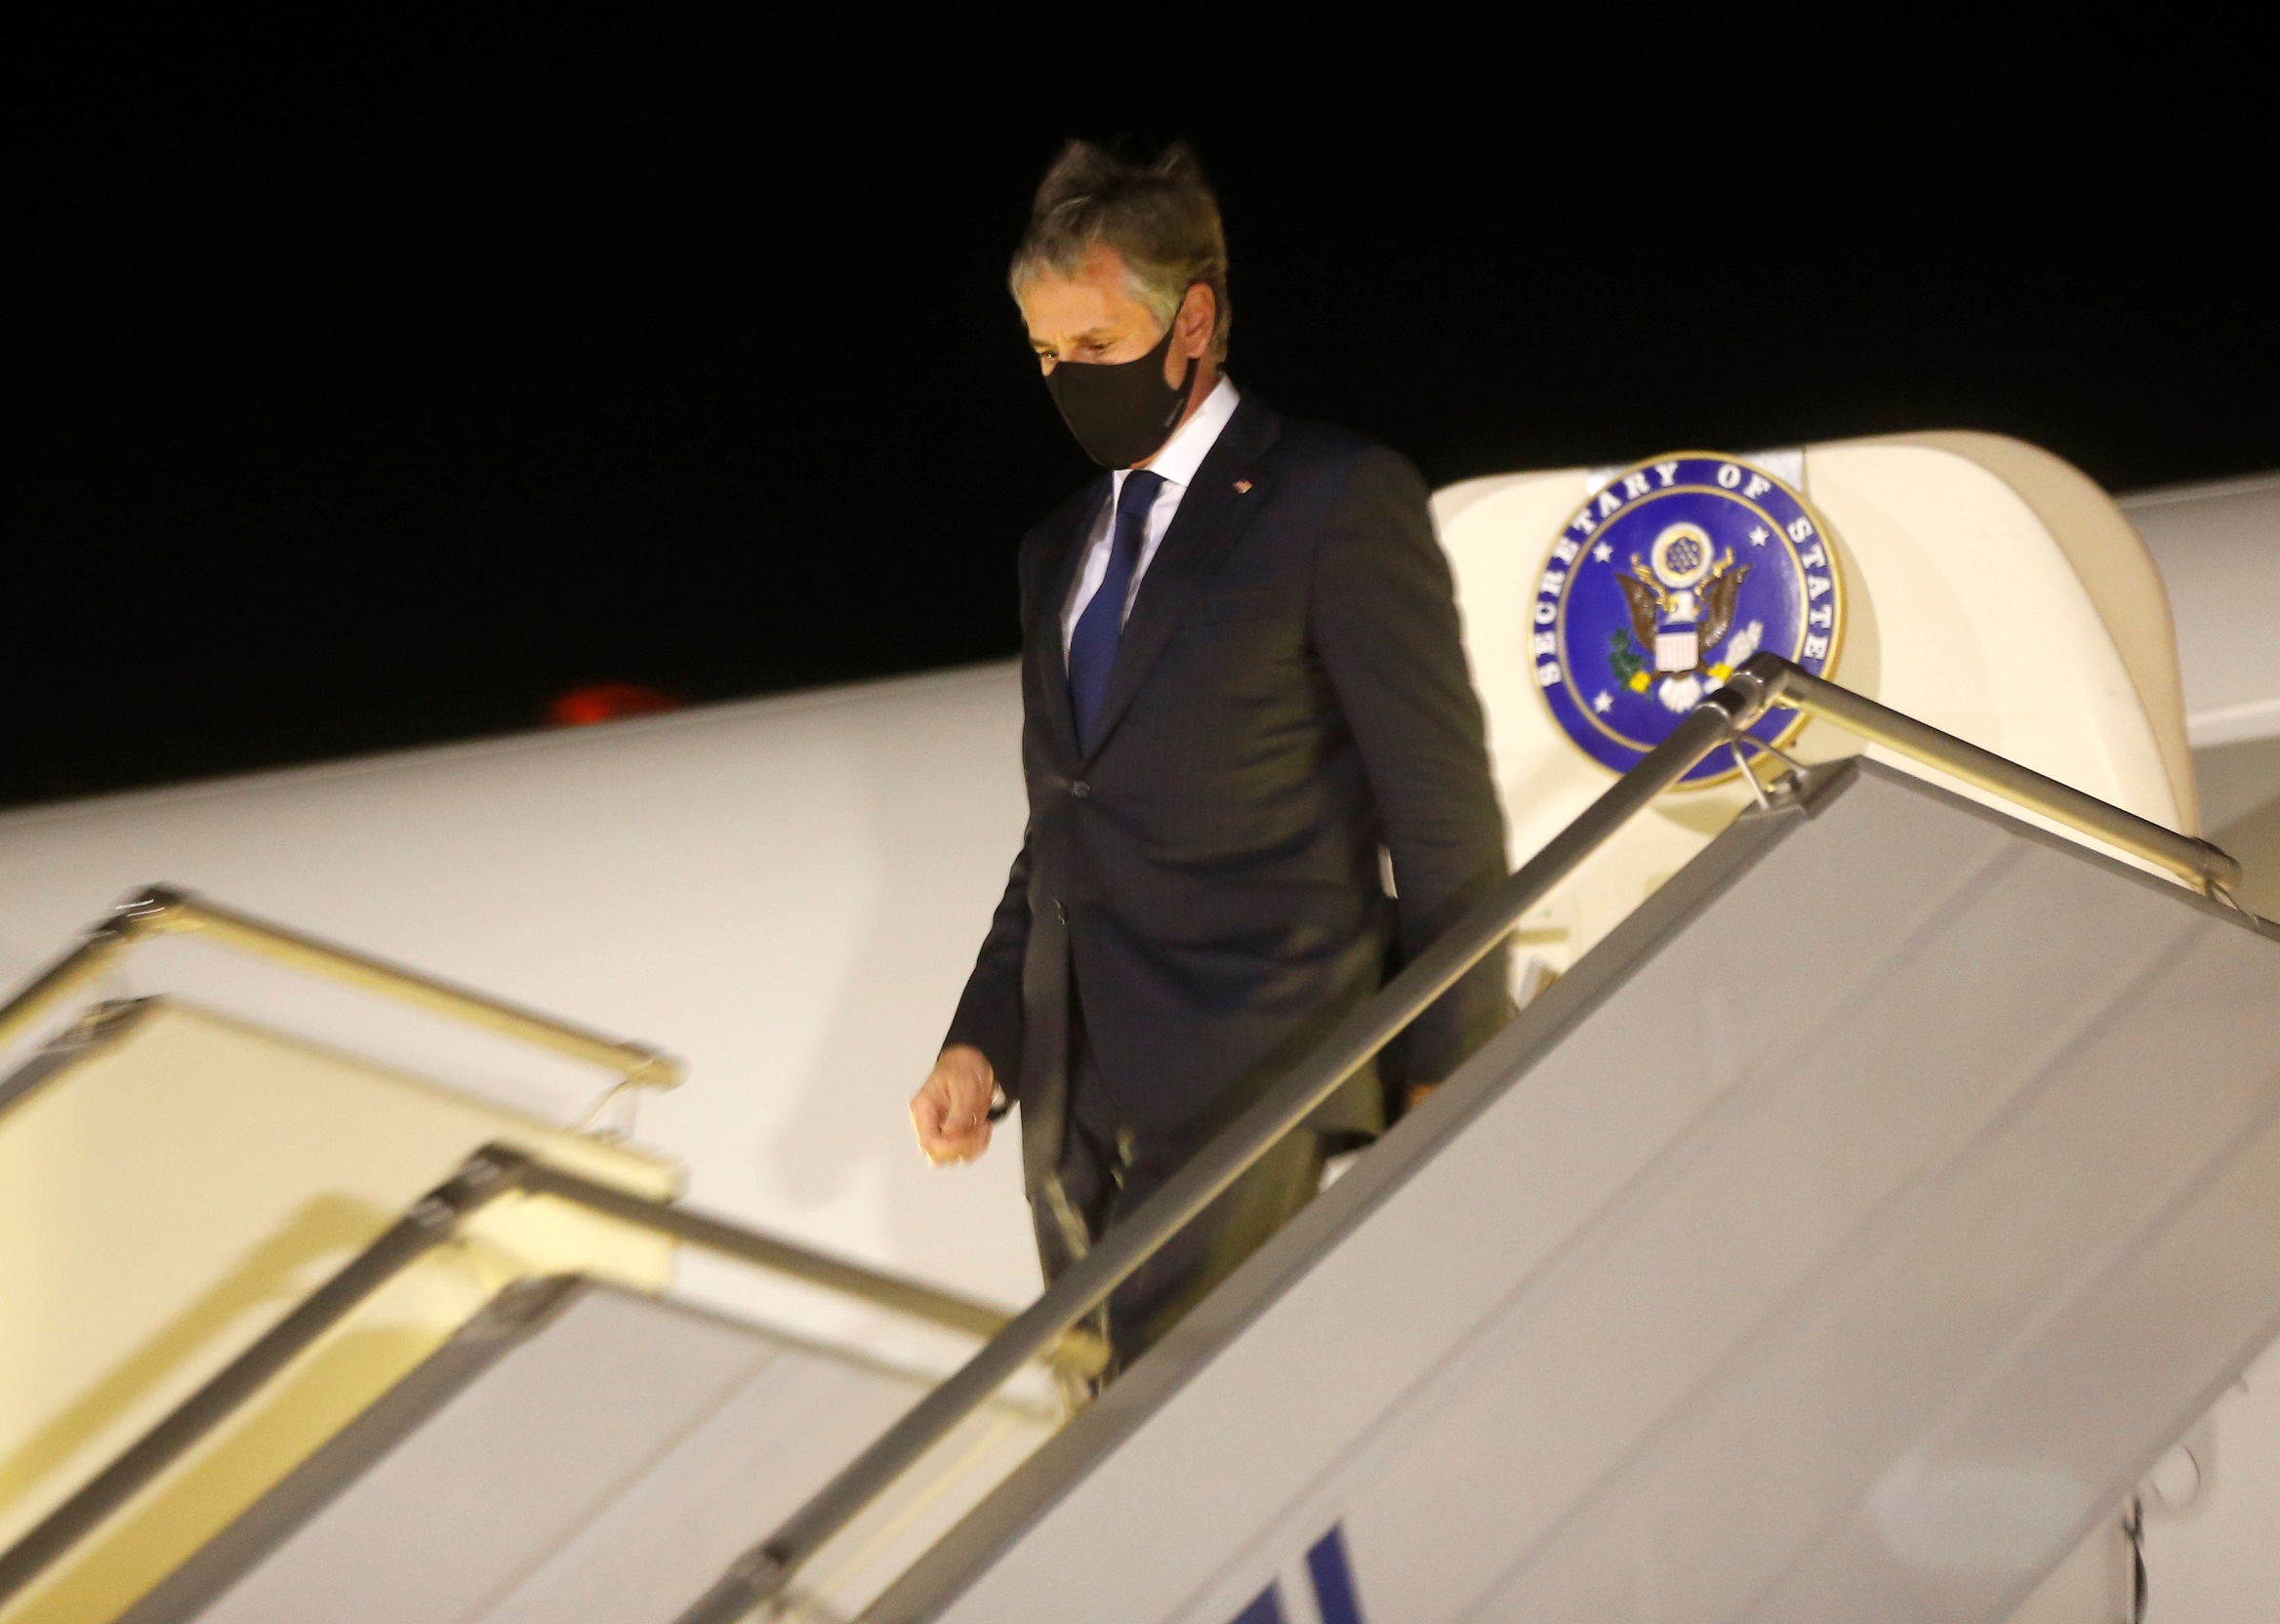 وزير الخارجية الأميركي أنتوني بلينكين بعد هبوط الطائرة في مطار بوريسبيل الدولي خارج كييف، 6 أيار/مايو 2021. (رويترز)